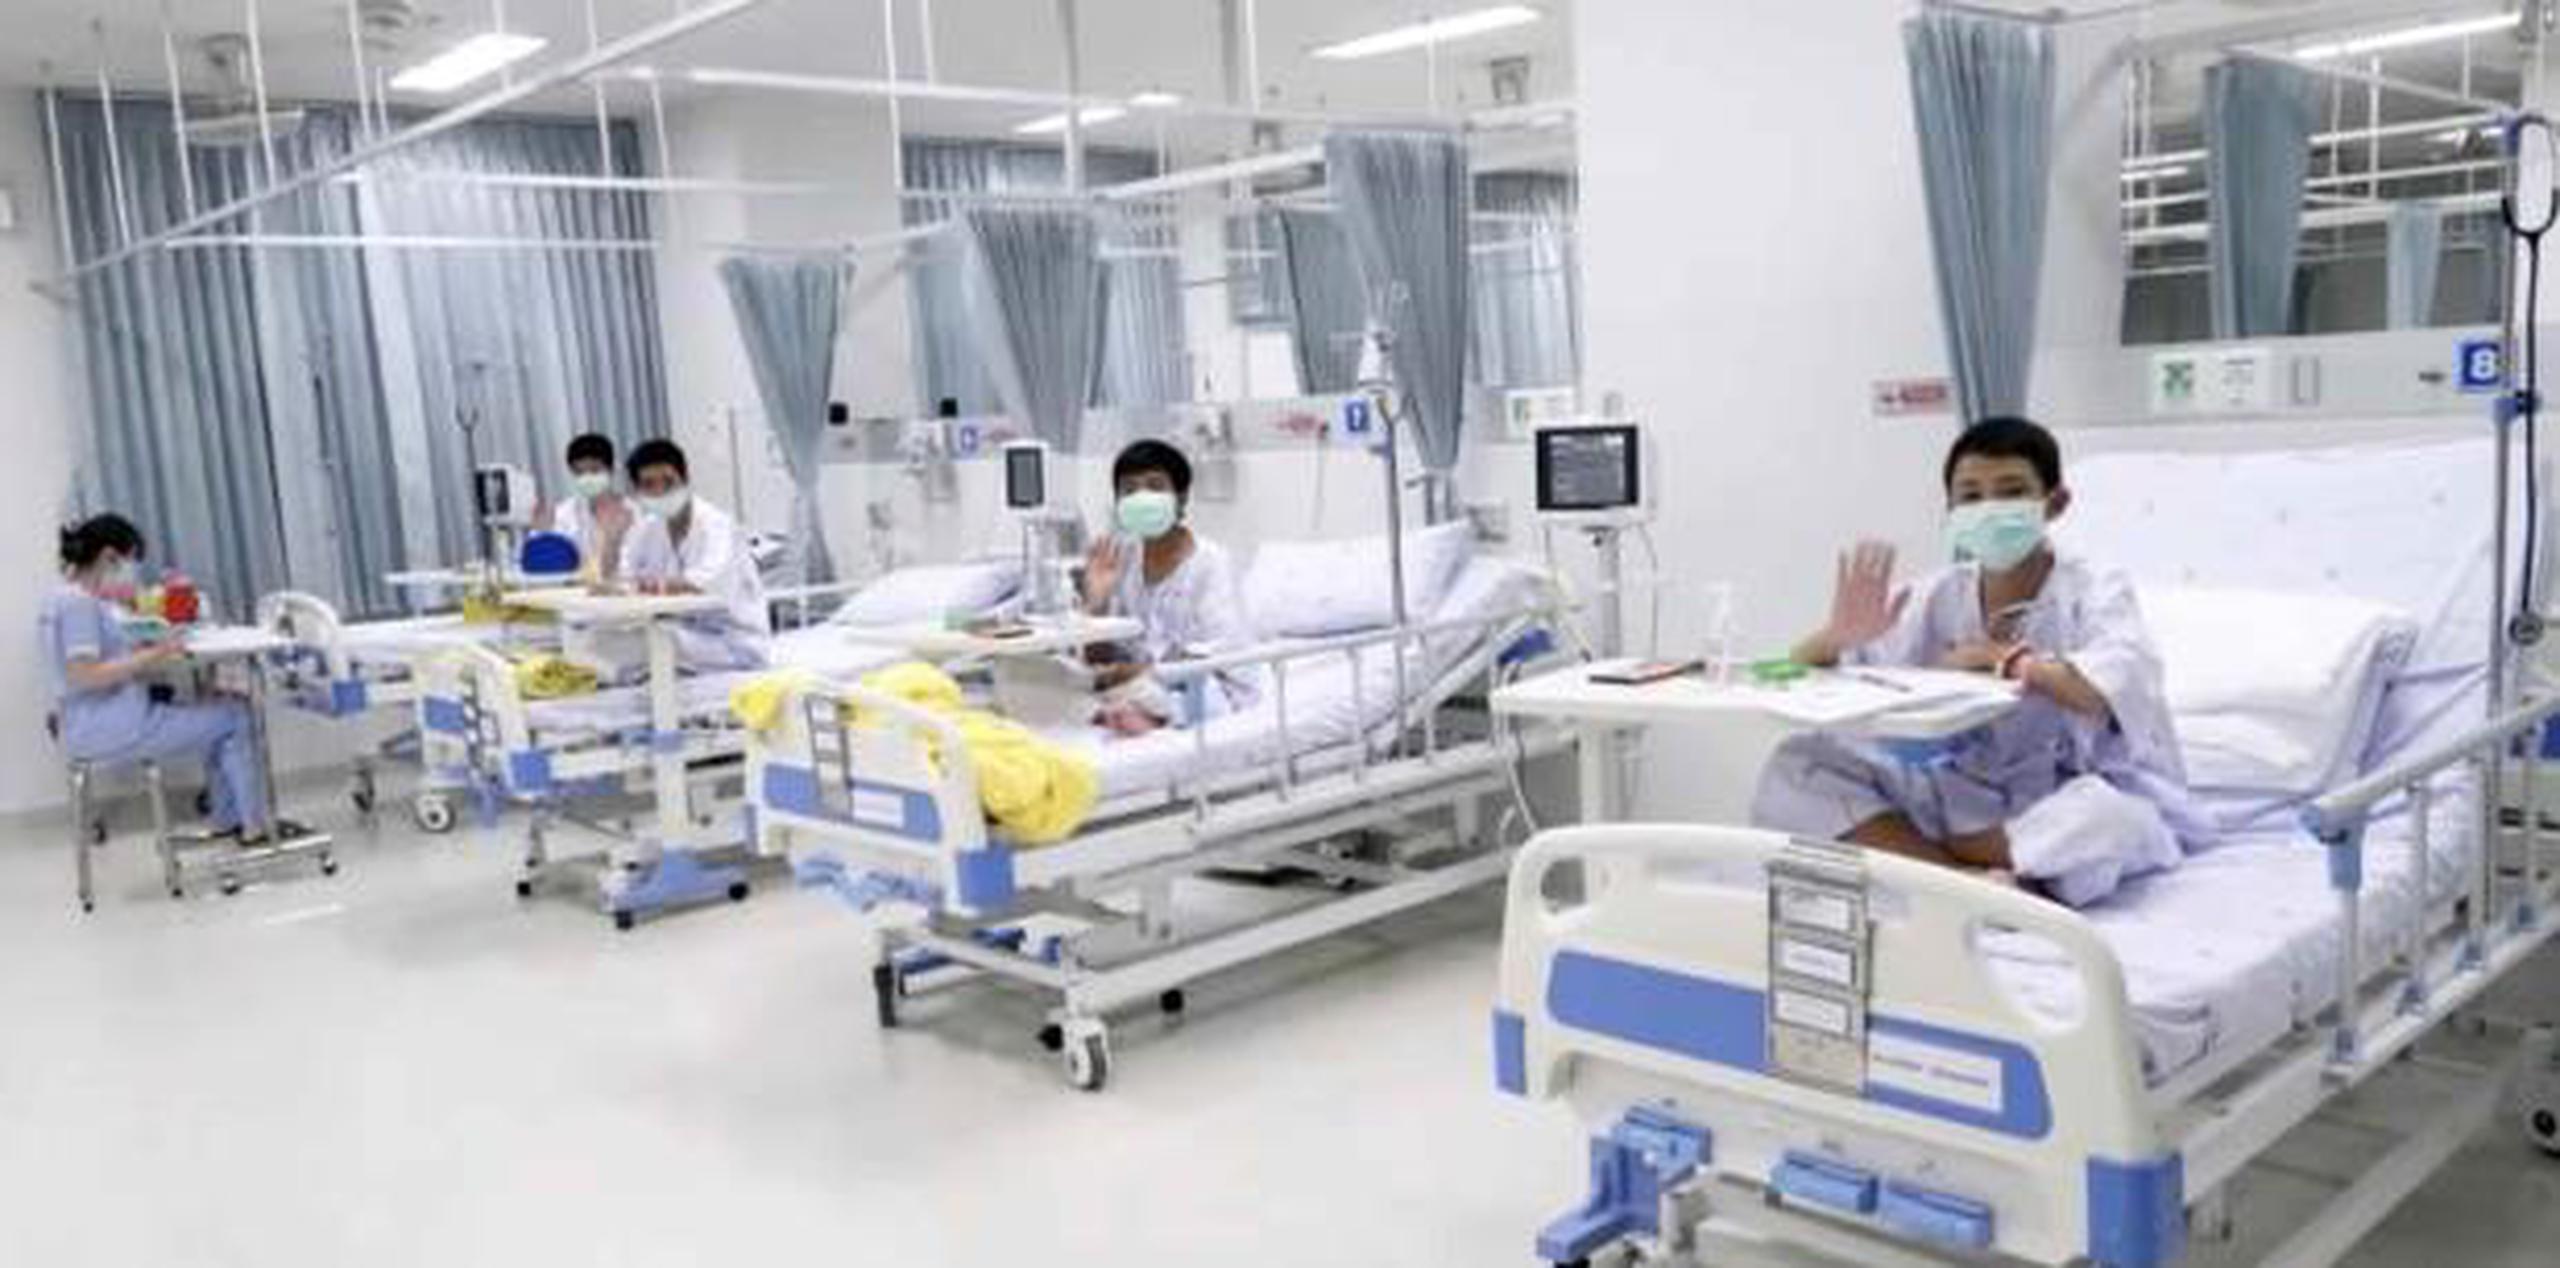 Un comunicado del hospital afirmó que los chicos continúan en recuperación y siguen siendo susceptibles a enfermedades infecciosas. (EFE)